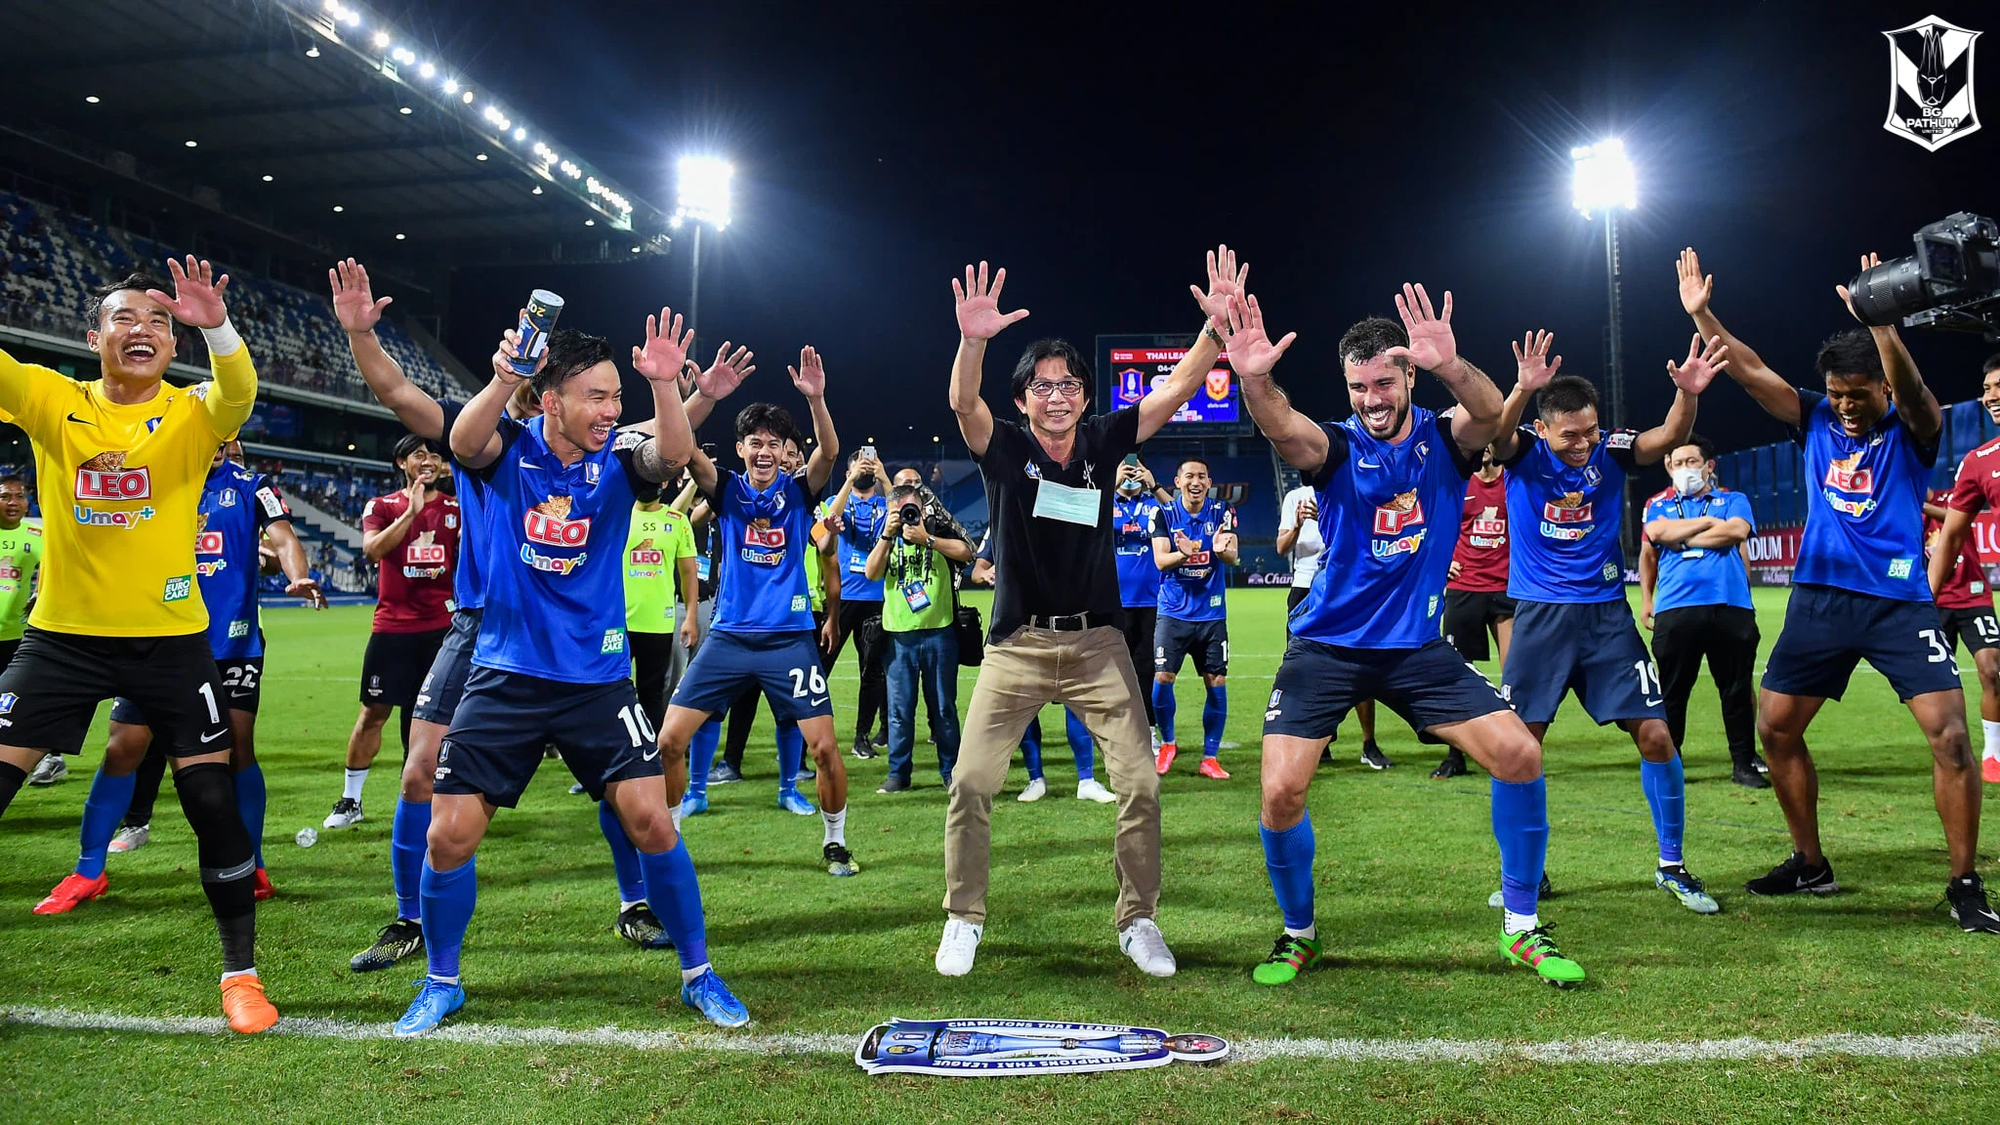 Lính cũ của bầu Đức lập siêu kỷ lục tại Thai-League - Ảnh 1.